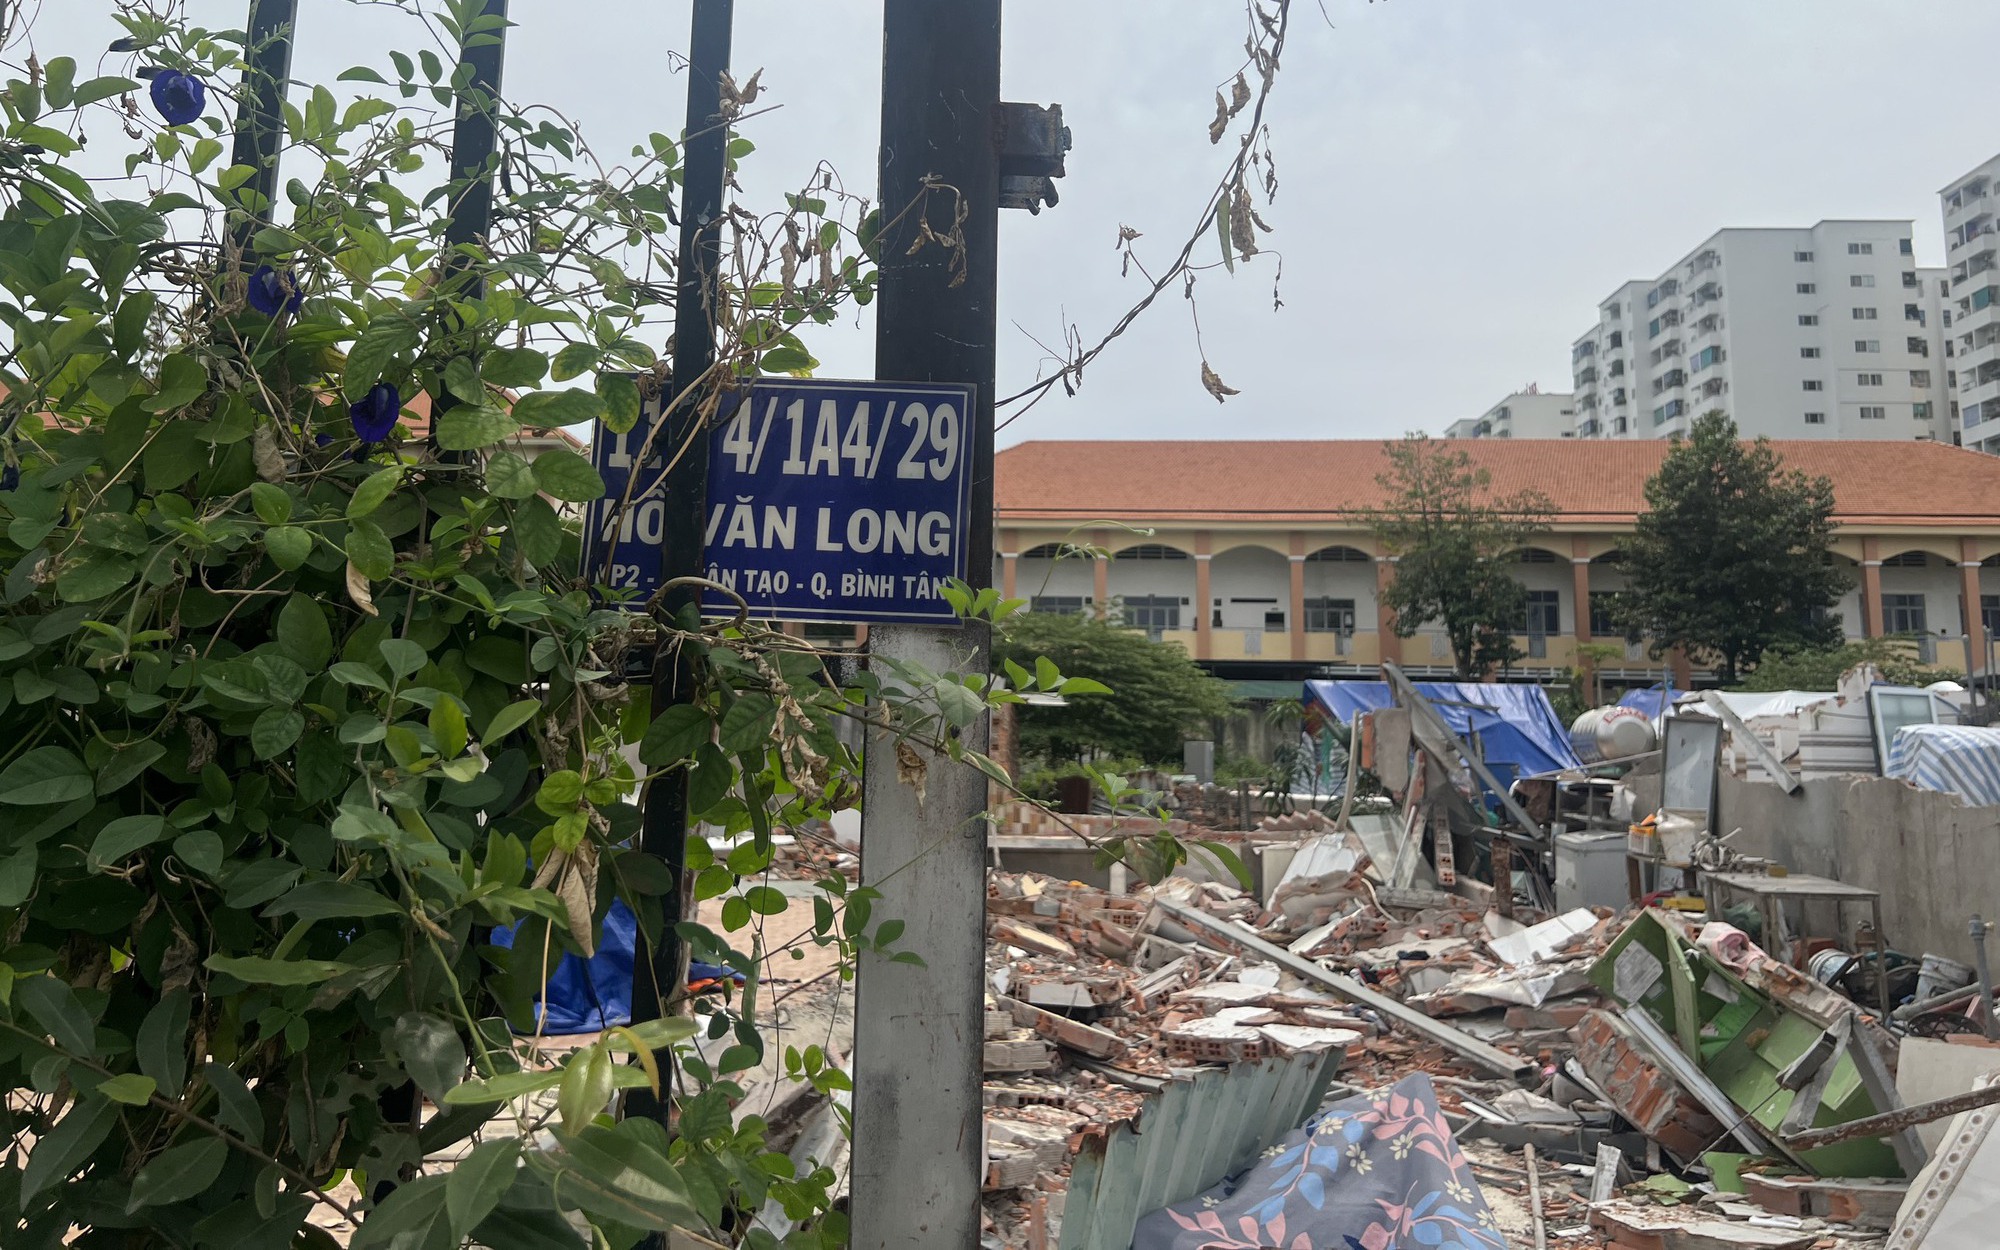 Chưa tháo dỡ gần 100 ngôi nhà xây trái phép trên đất nông nghiệp ở quận Bình Tân, TP.HCM vì sao?